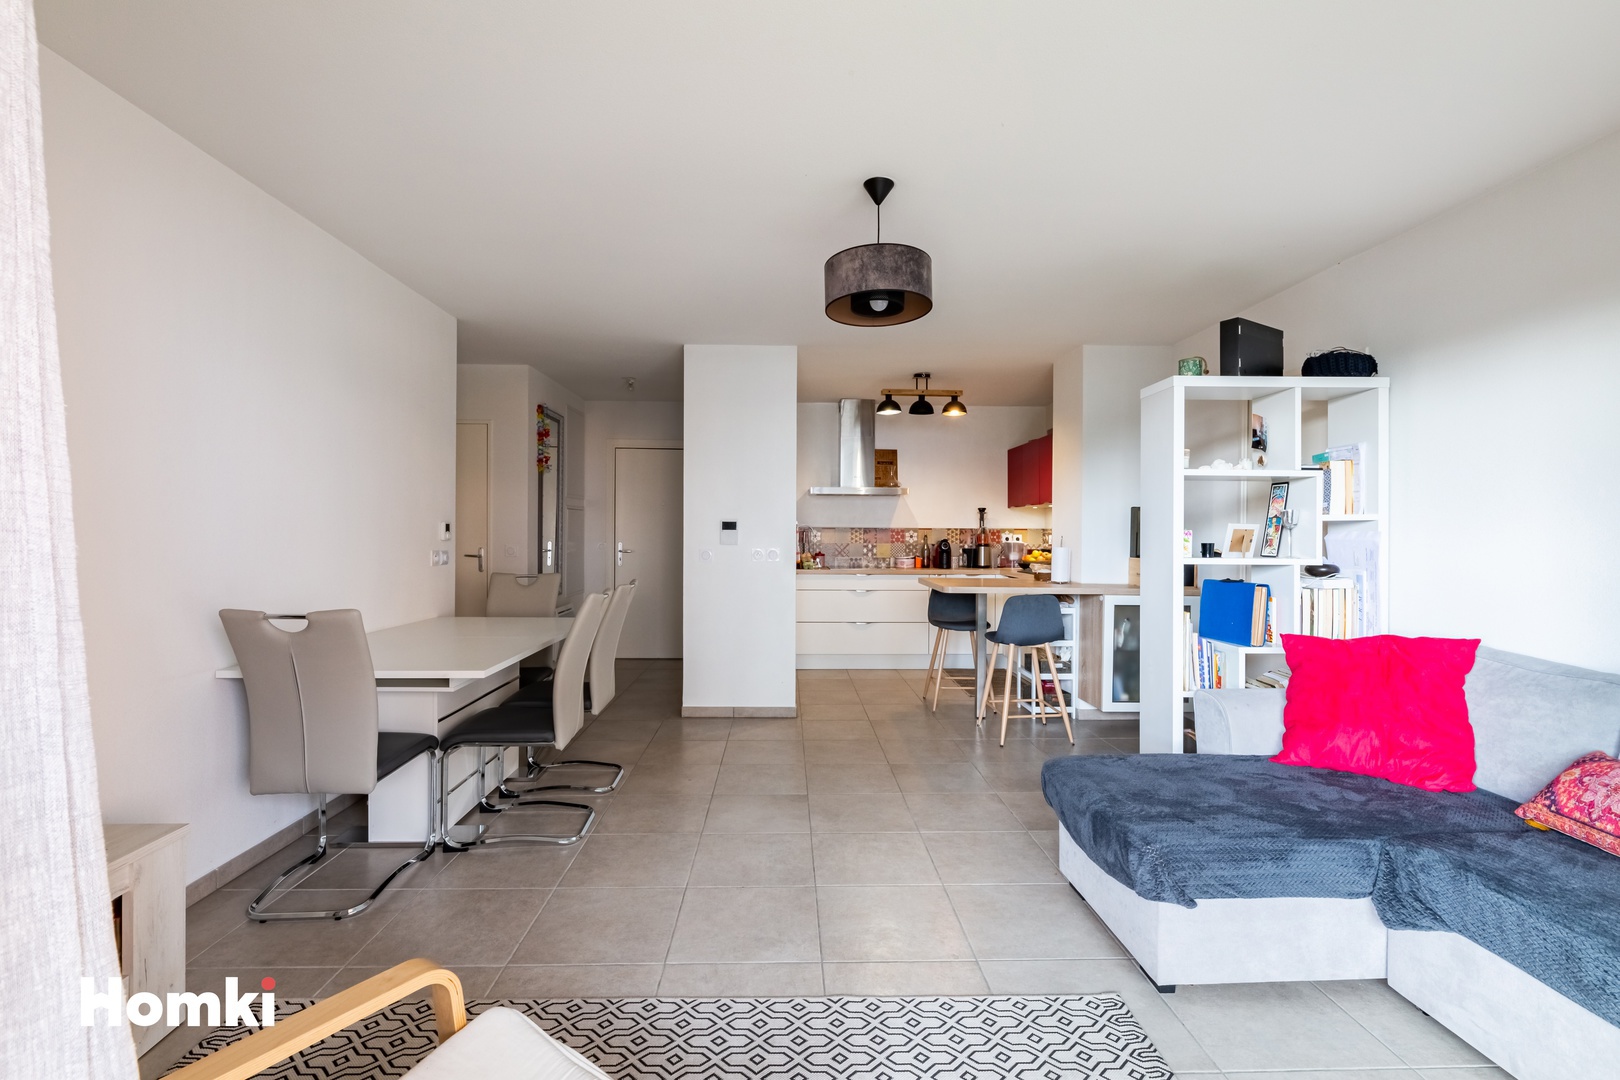 Homki - Vente Appartement  de 77.0 m² à Fréjus 83600